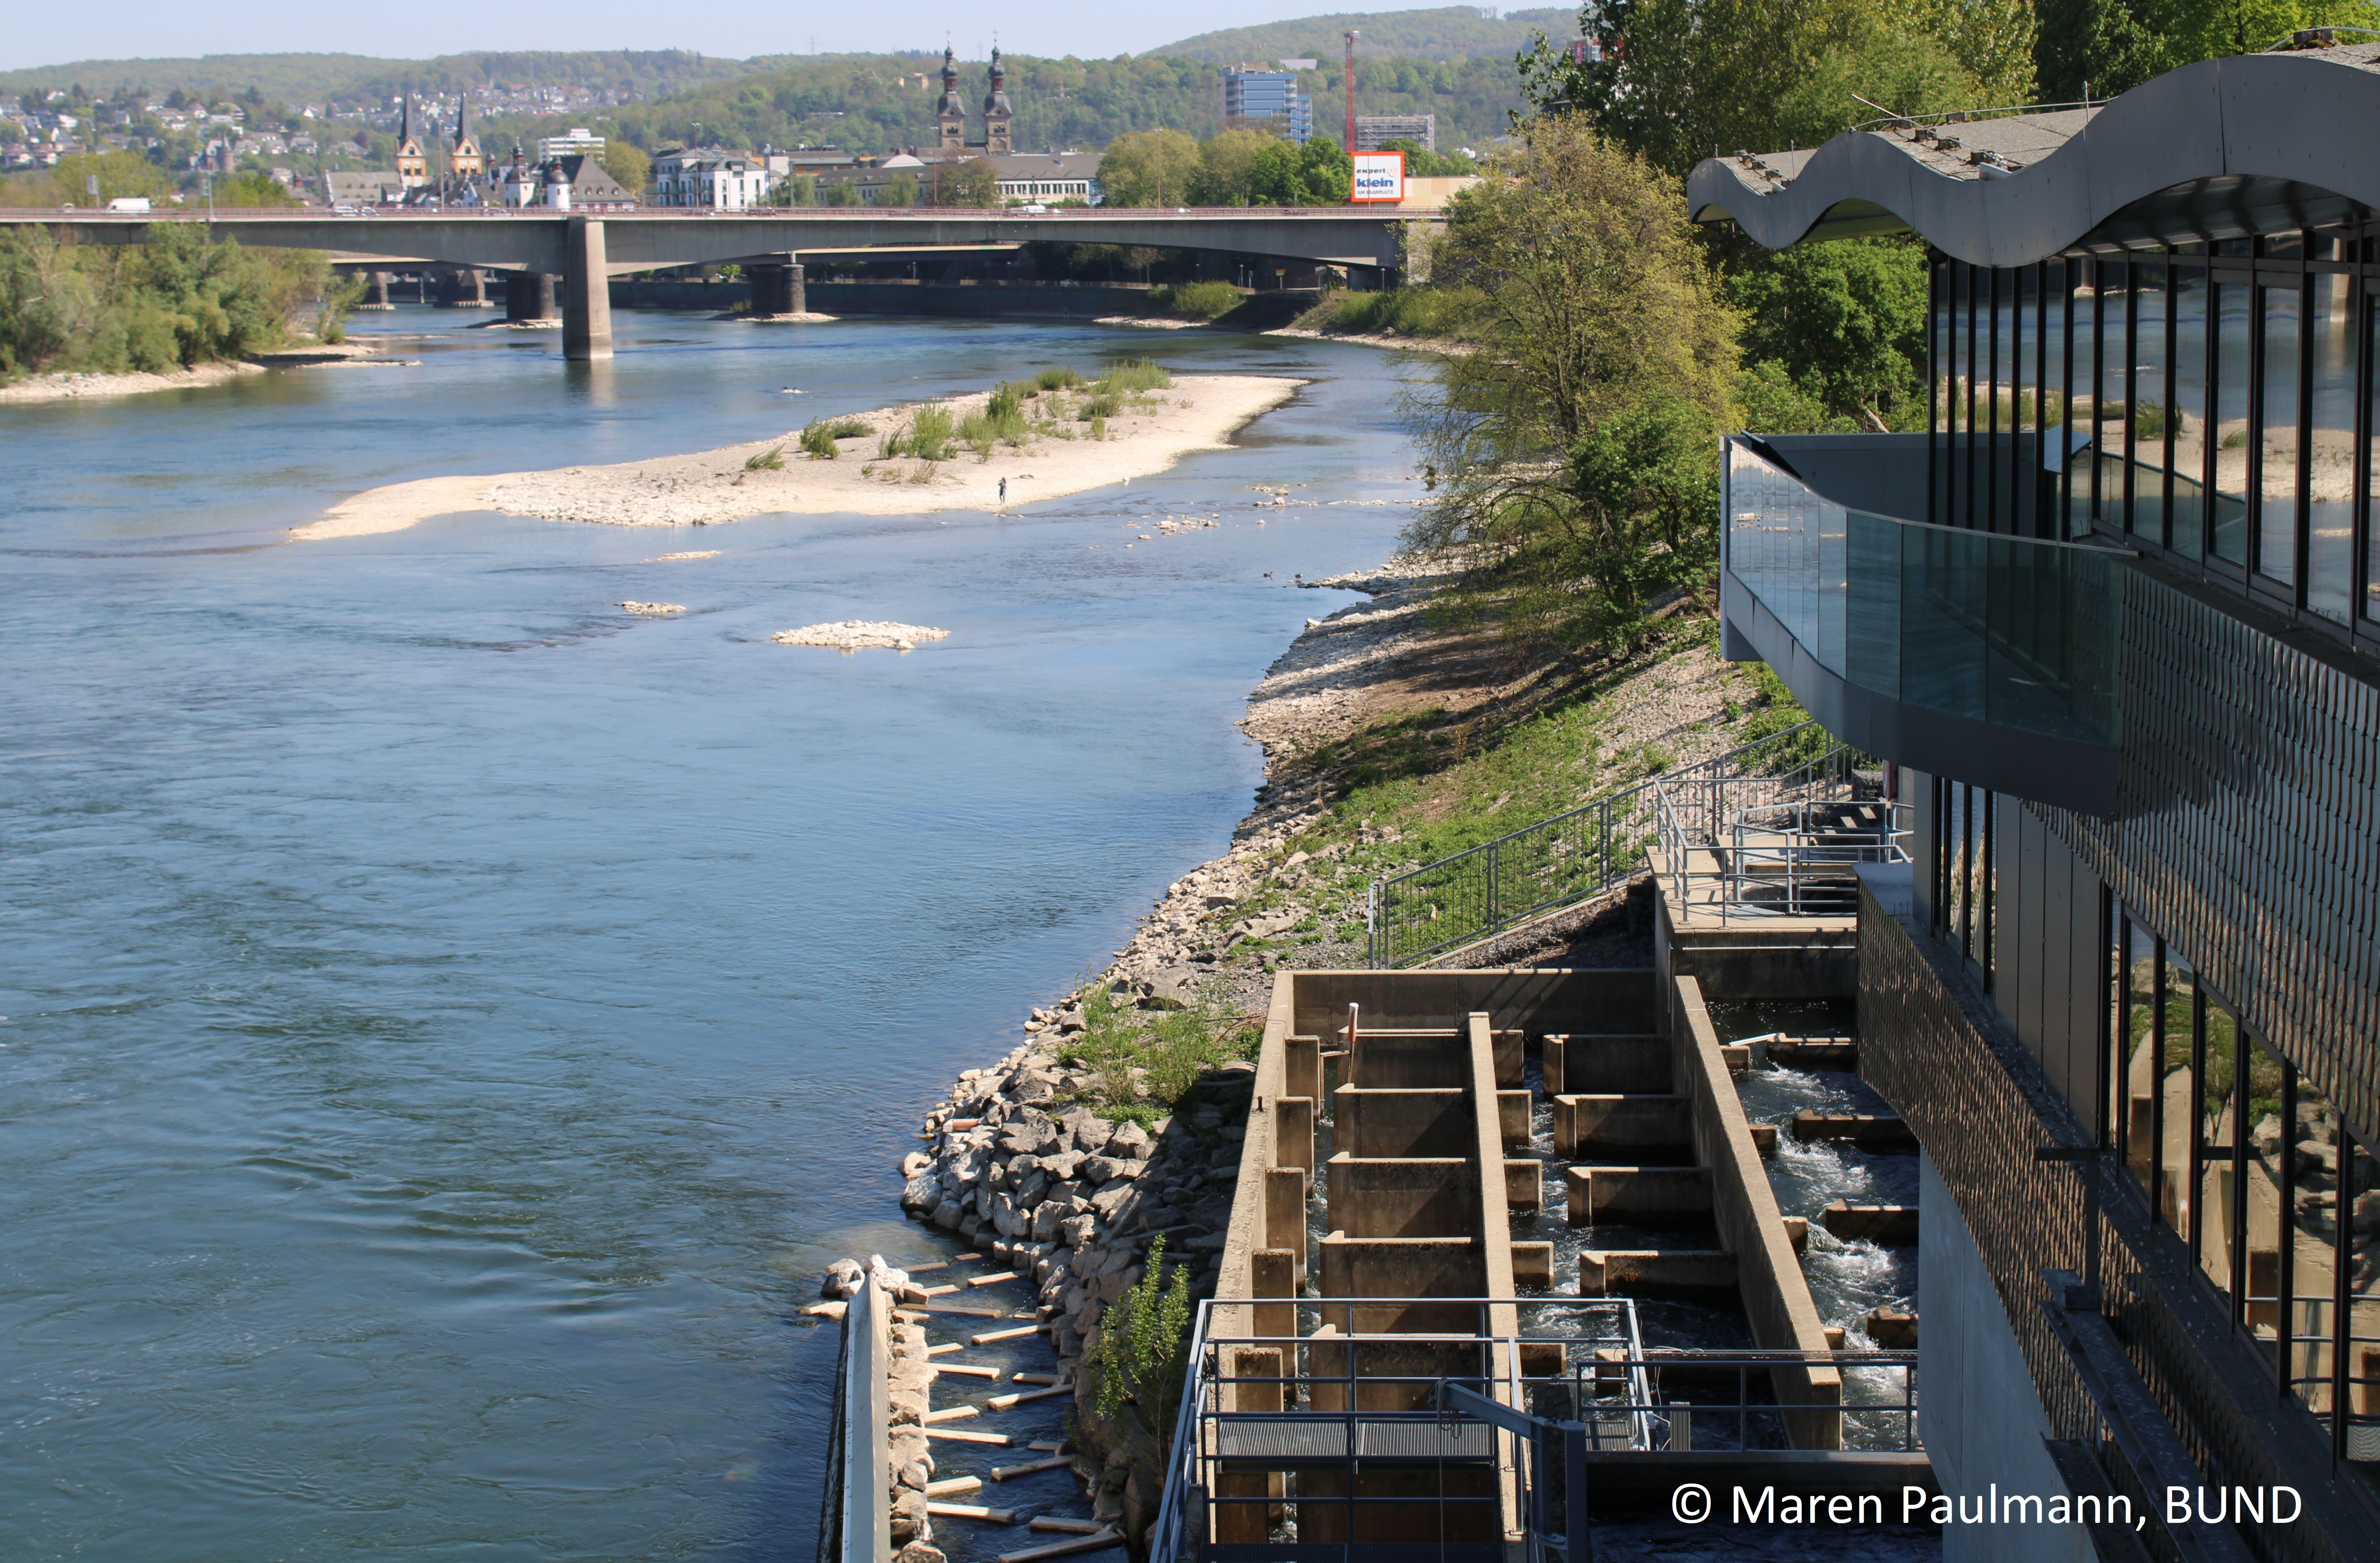 Fishpass Koblenz – open for everyone